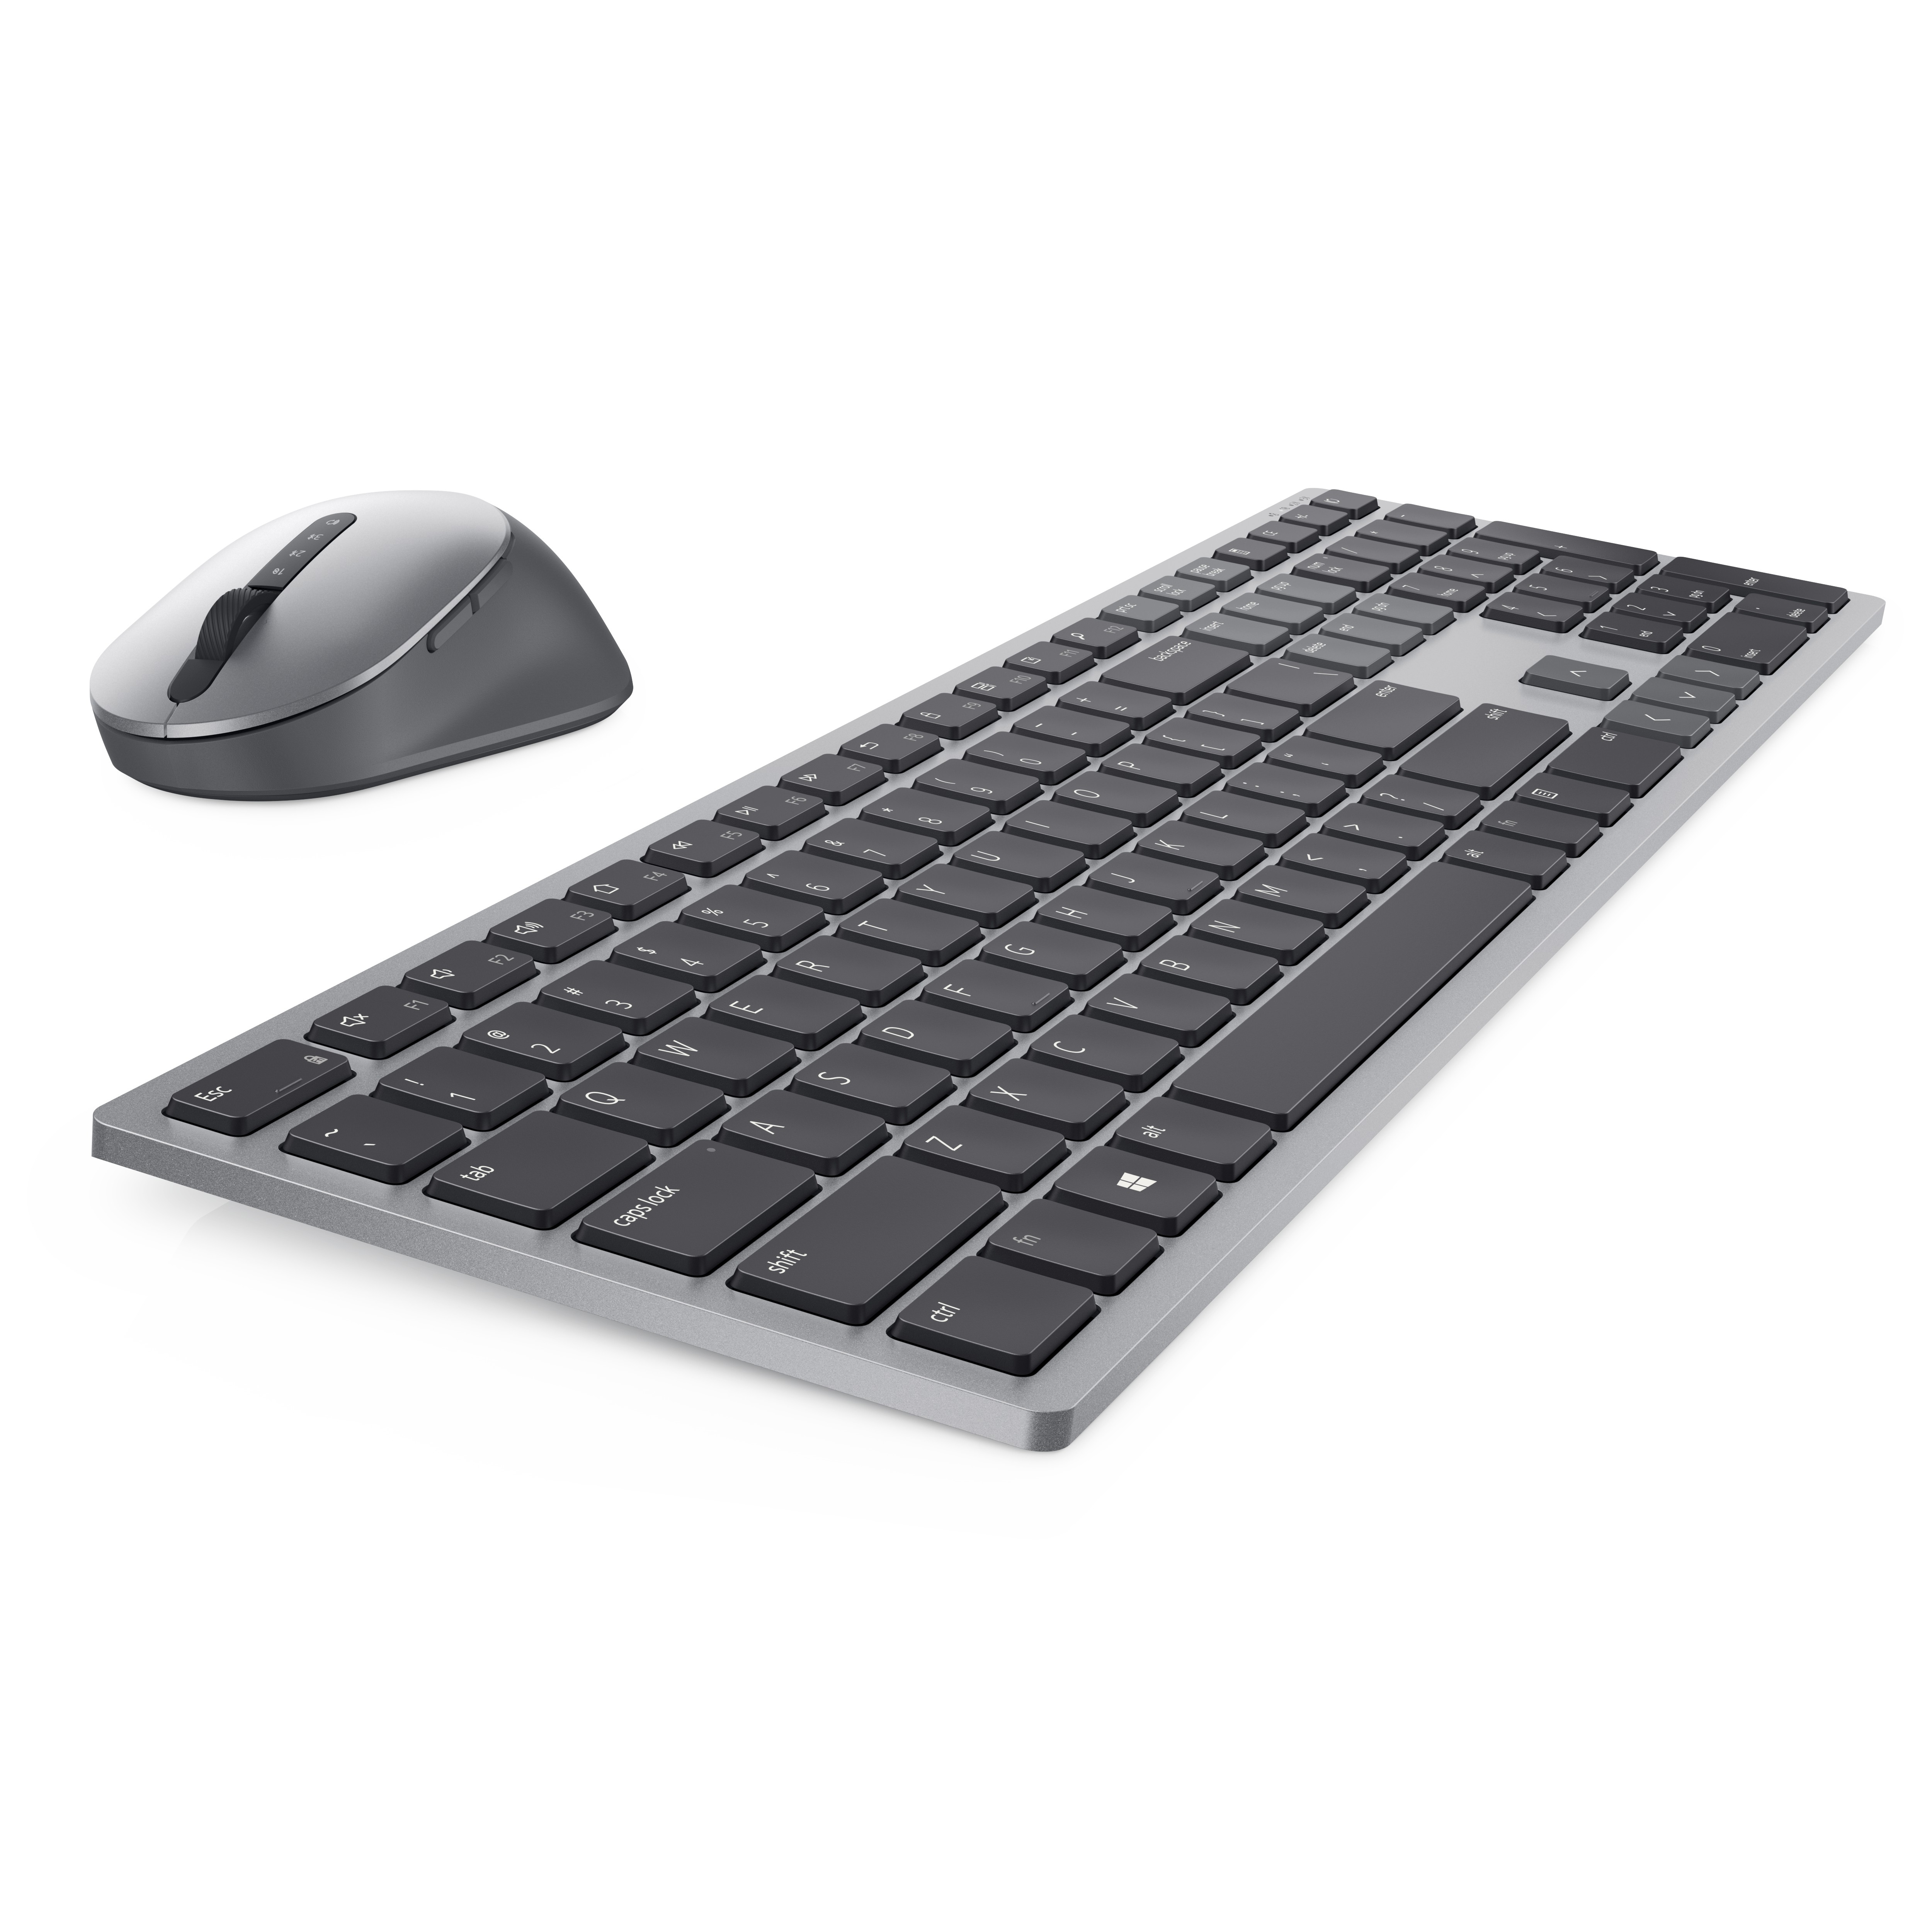 Dell Premier-Mehrgeräte-Wireless-Tastatur und -Maus - KM7321W - deutsch (QWERTZ) - Volle Größe (100%) - RF Wireless + Bluetooth - QWERTZ - Grau - Titan - Maus enthalten